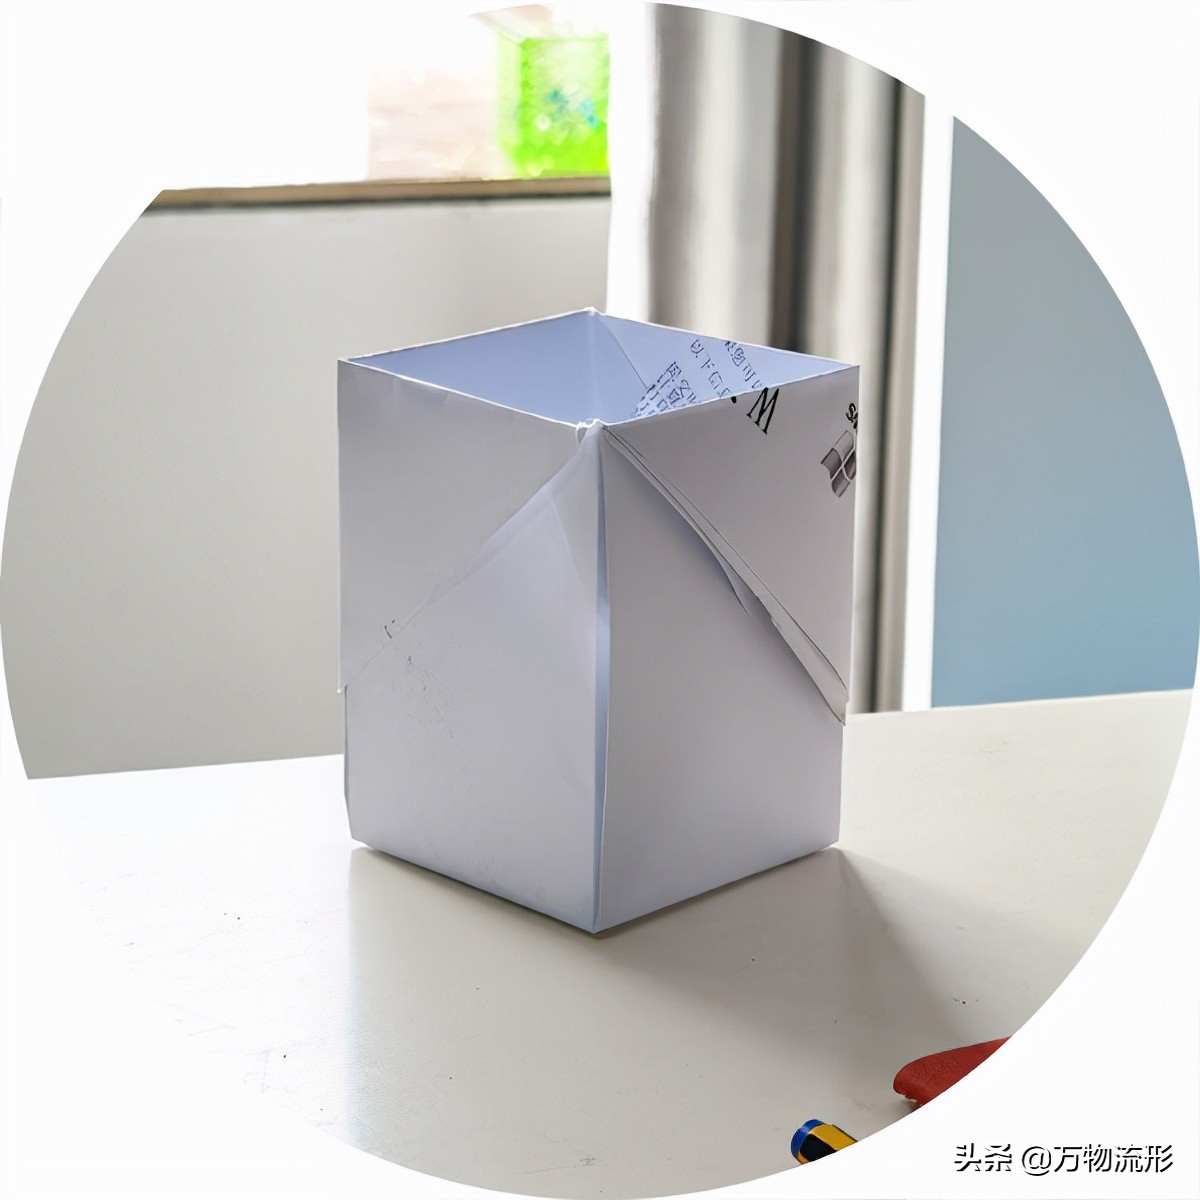 一张A4纸的折纸方法，折叠成八种桌面小收纳盒